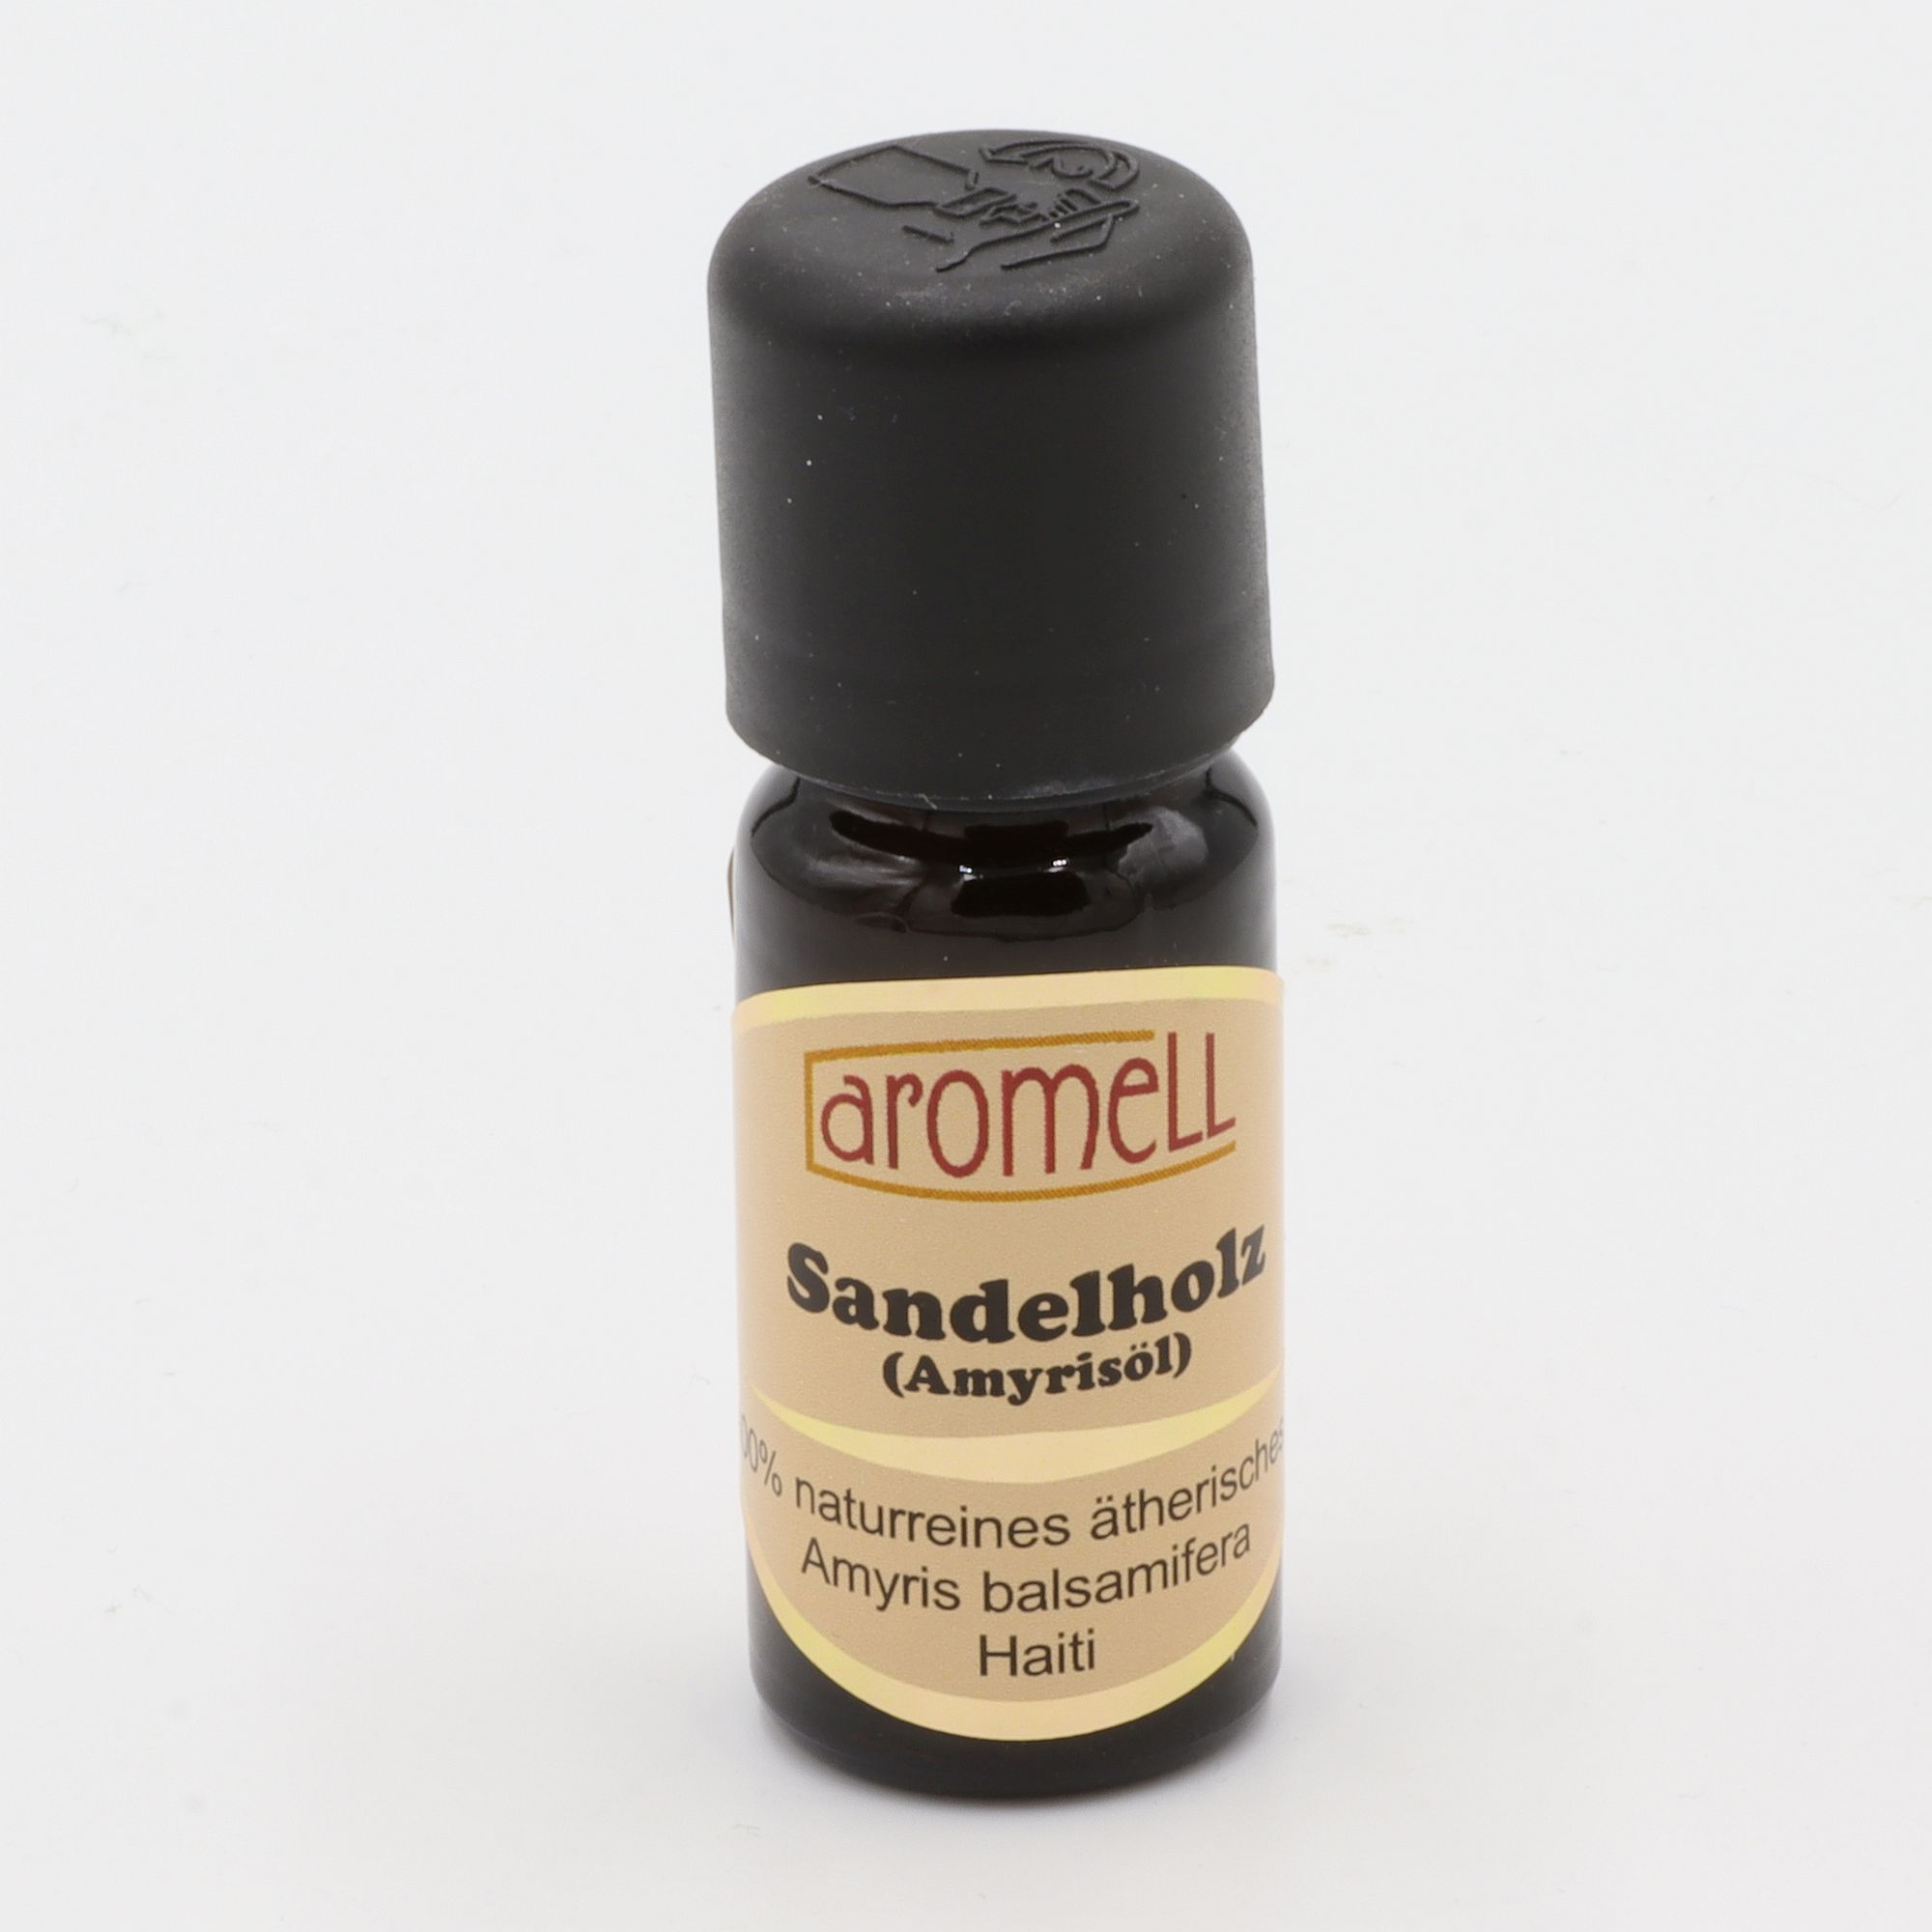 Ätherisches Öl - Aromell - Sandelholz (Amyrisöl) - 100% naturrein - Amyris Balsamifera aus Haiti - aromatischer Raumduft für Dein Wohlbefinden - Glas mit Tropfendosierung